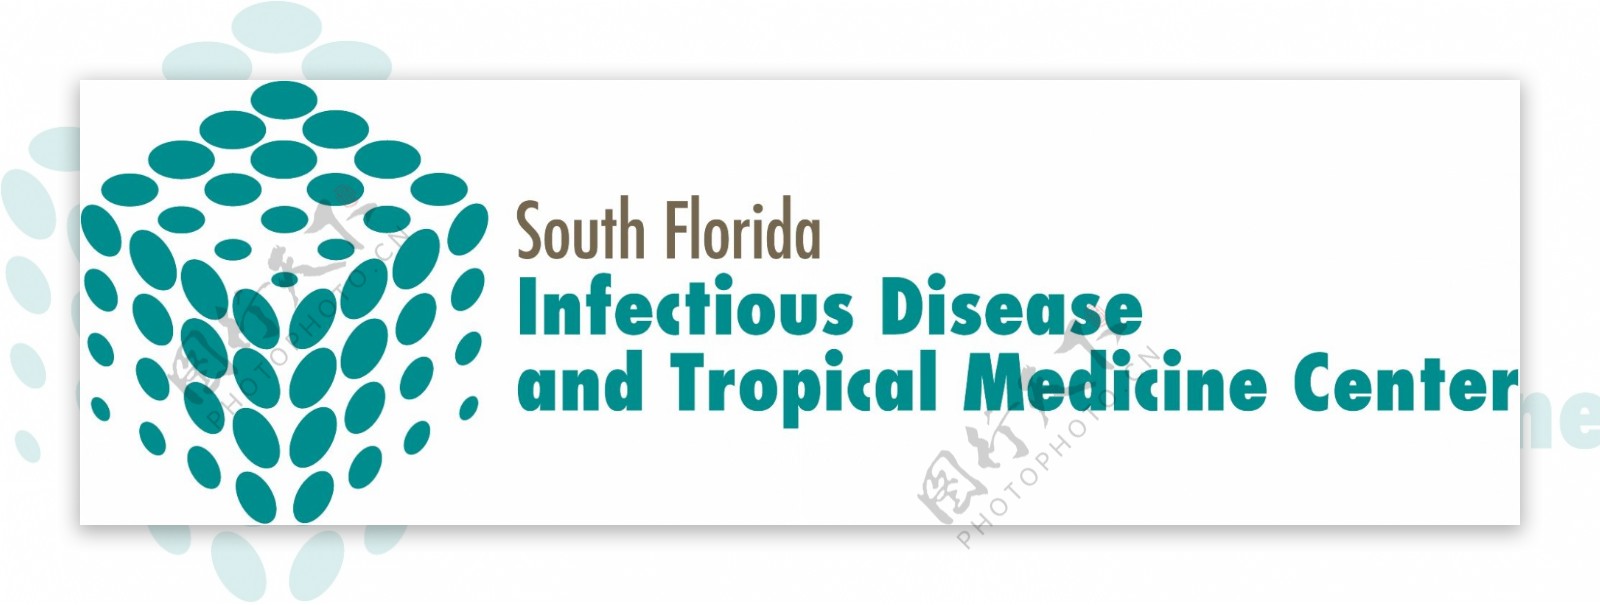 南佛罗里达州的传染病和热带医学